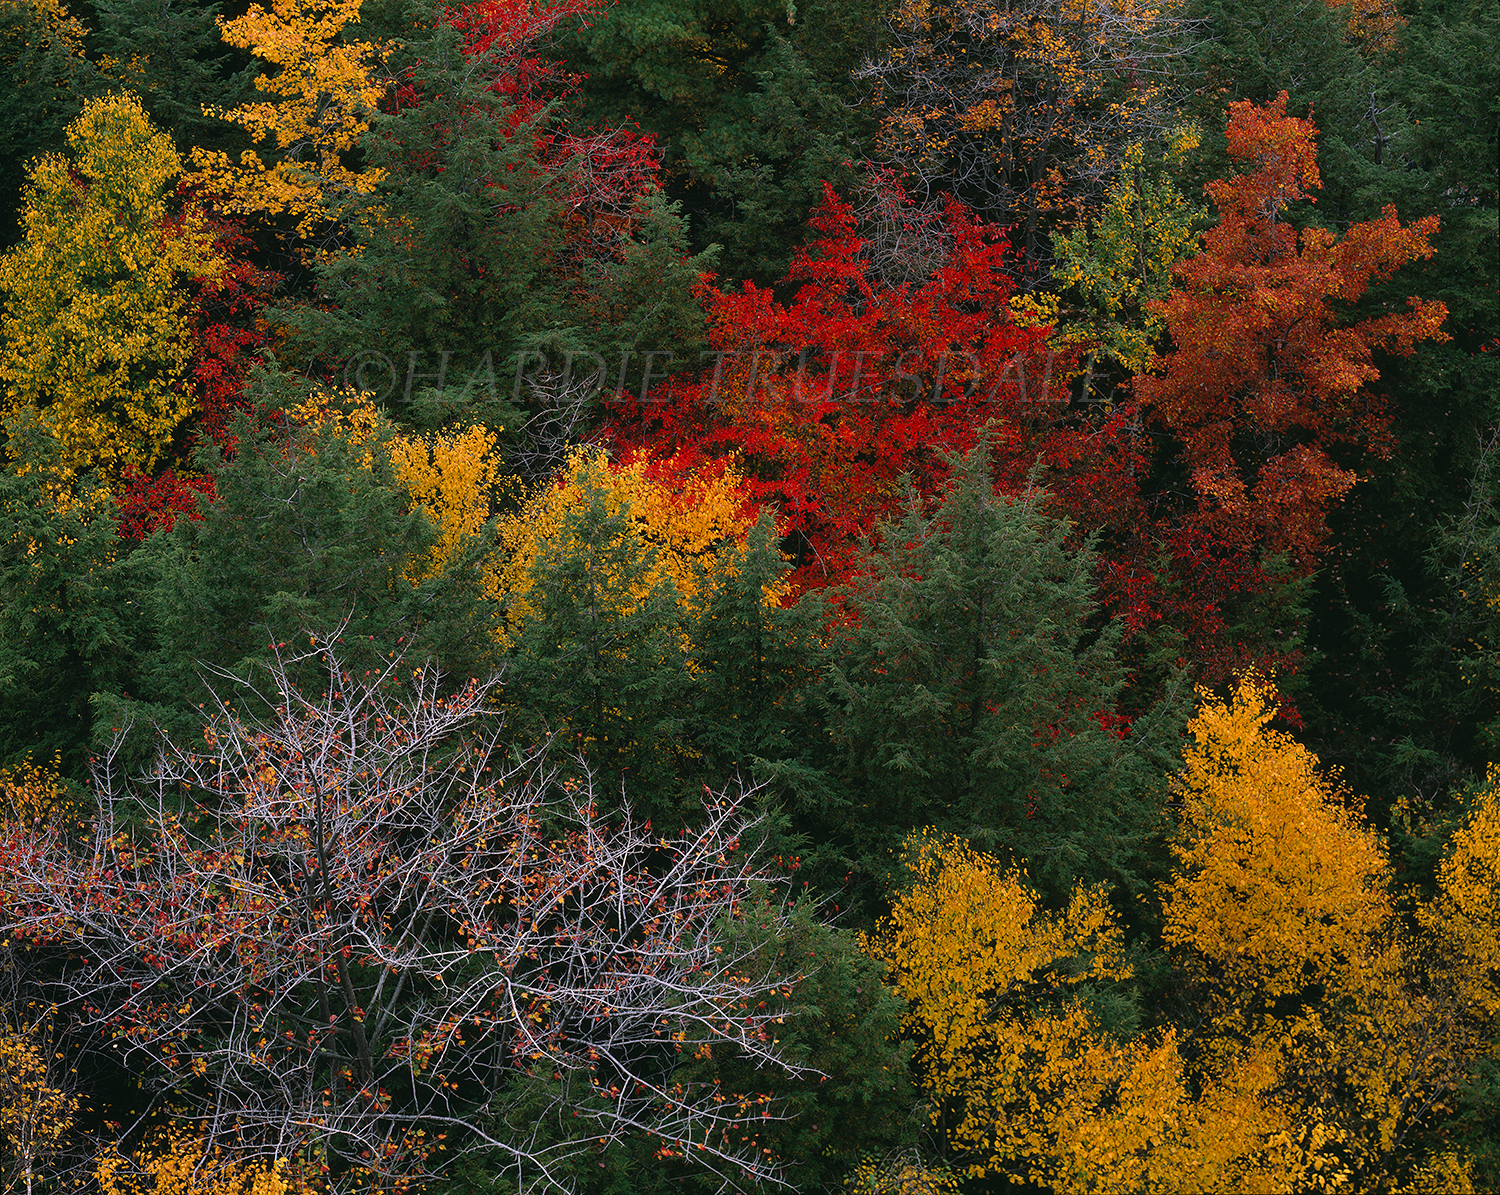  Gks#197 "Fall Trees, Minnewaska State Park" 